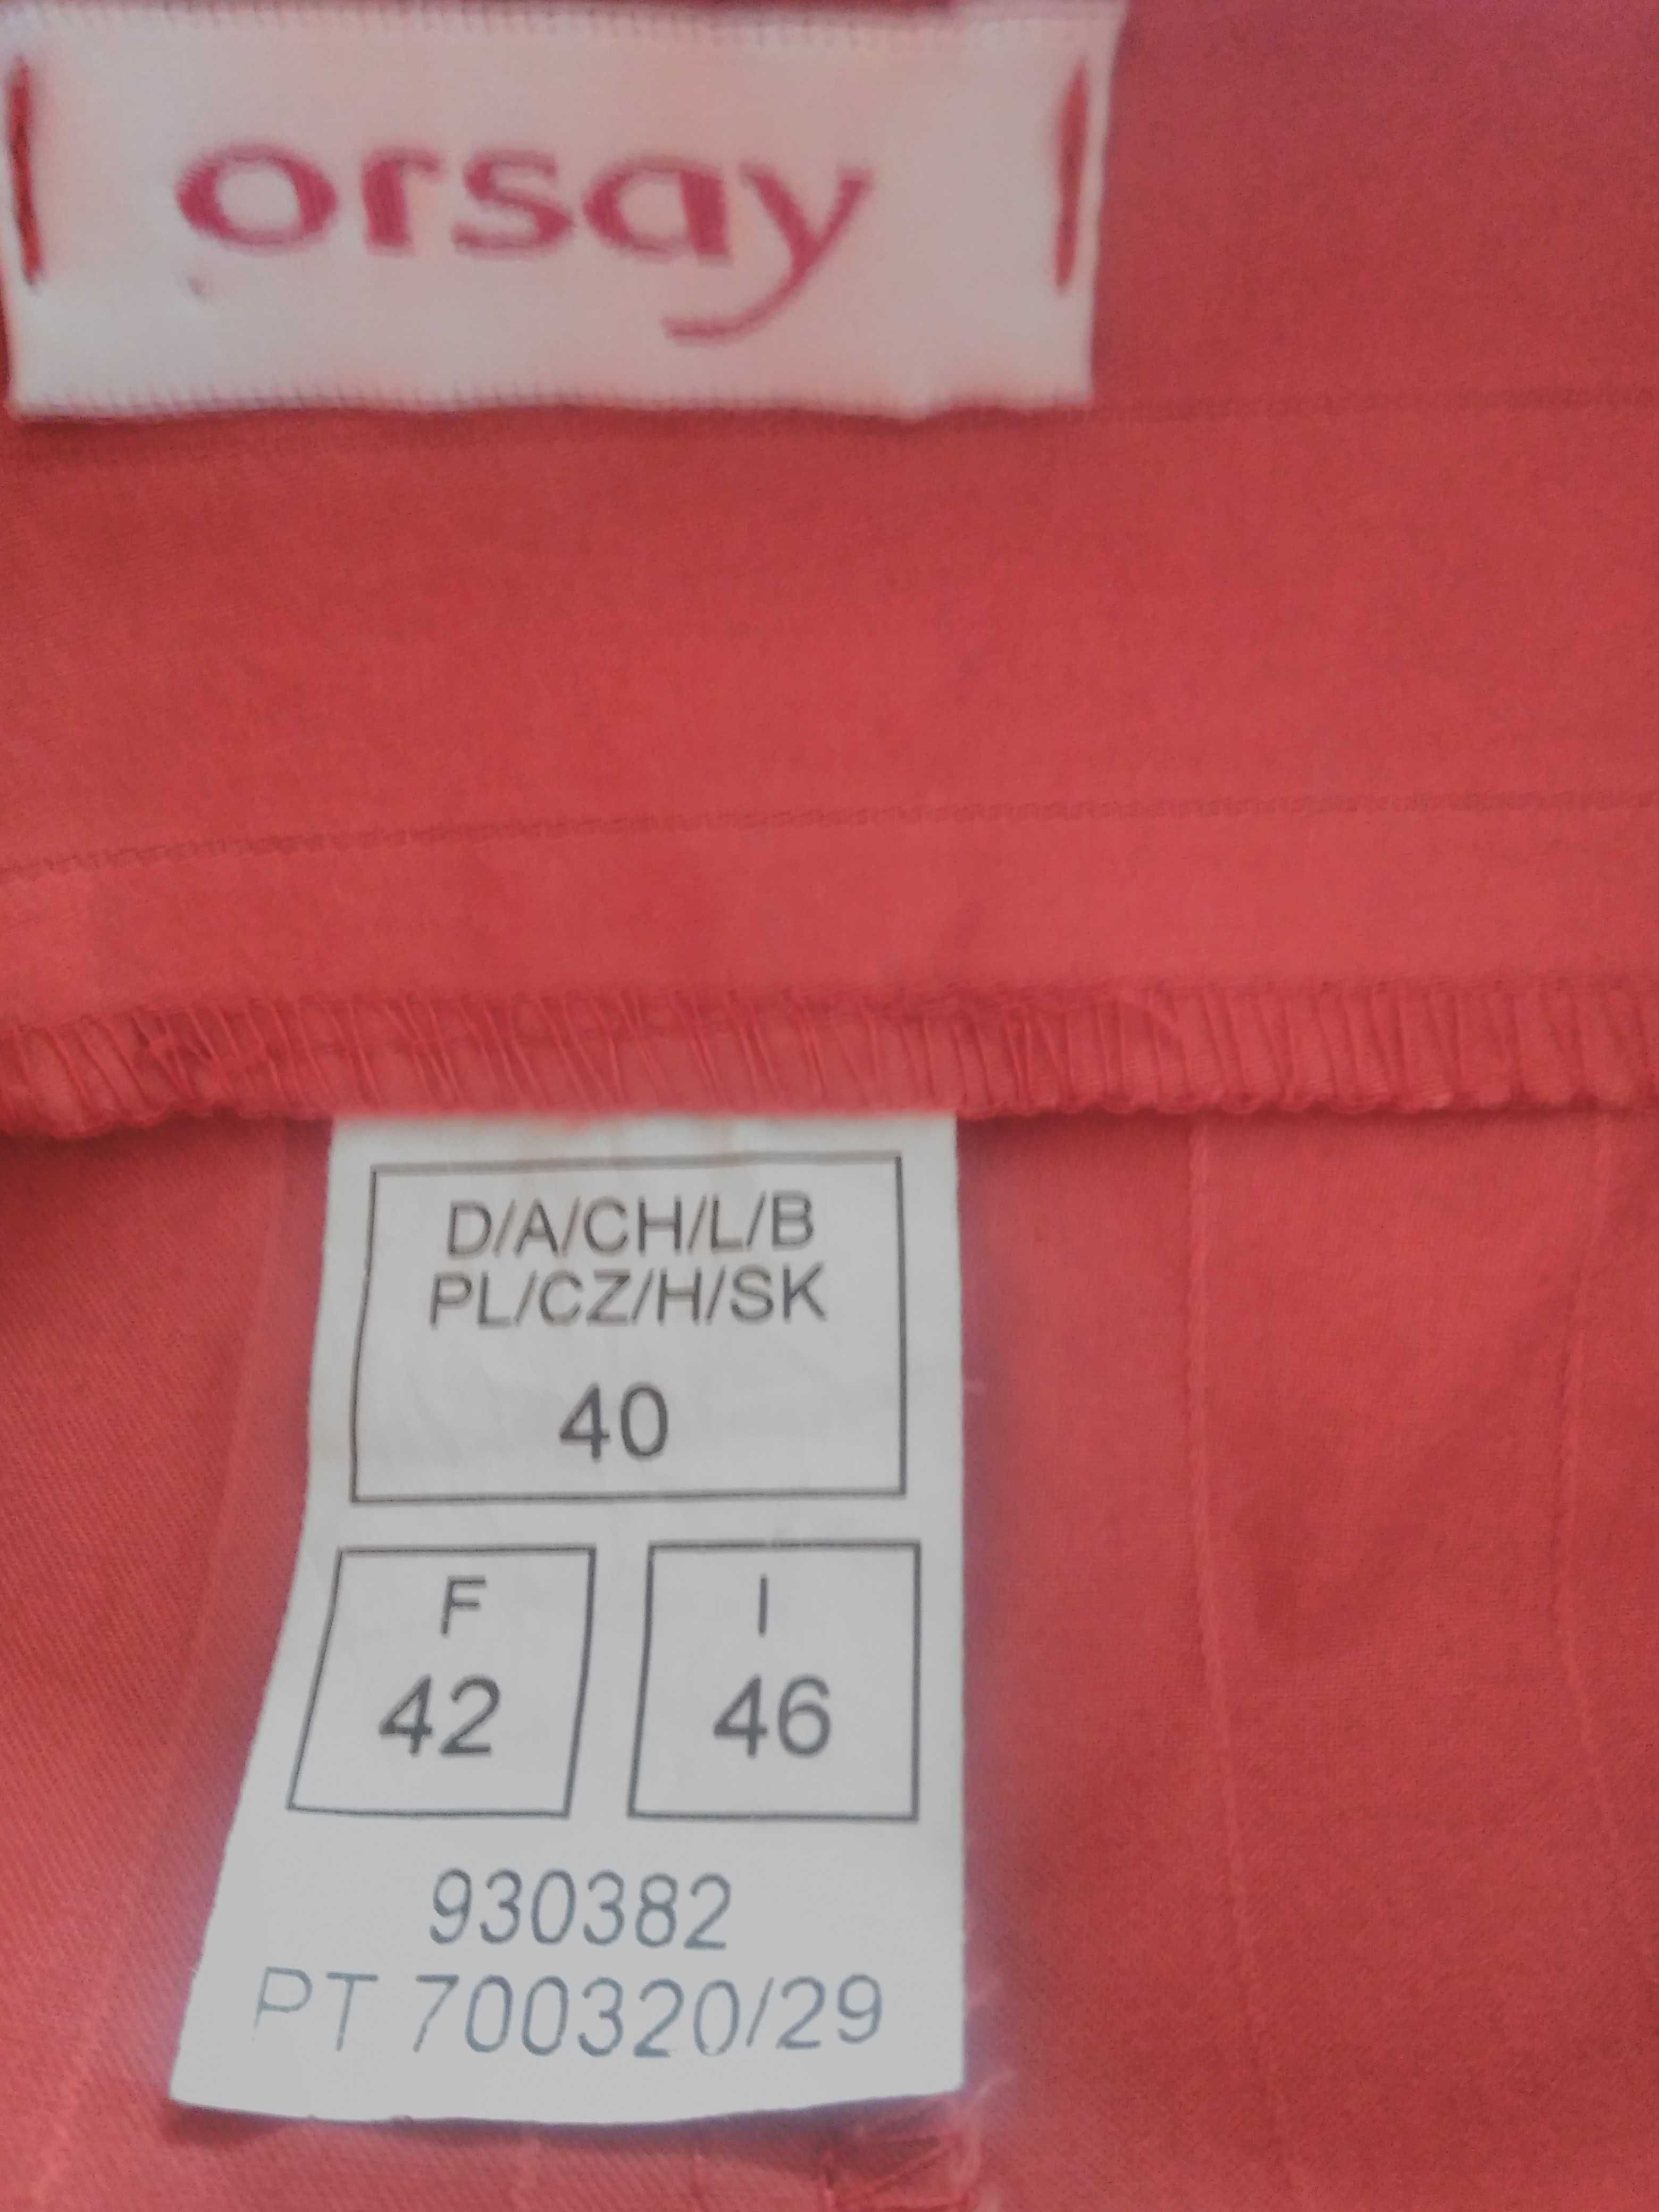 Spódnica czerwona Orsay przygaszona czerwień rozmiar 40